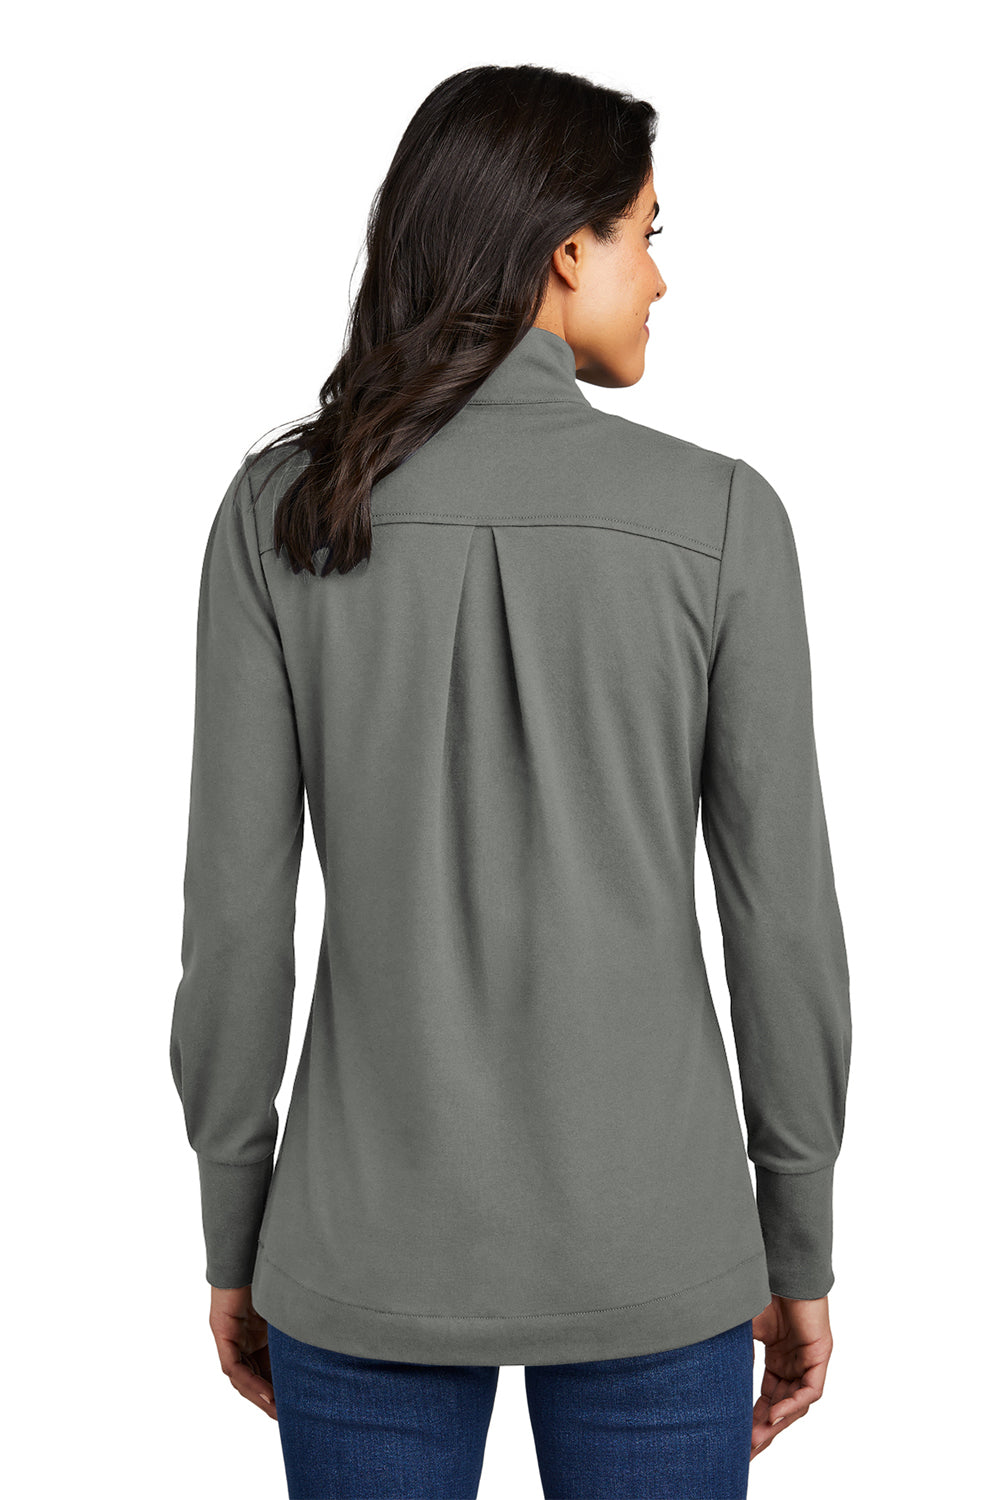 Port Authority Womens Fairway 1/4 Zip Sweatshirt Shadow Grey Back